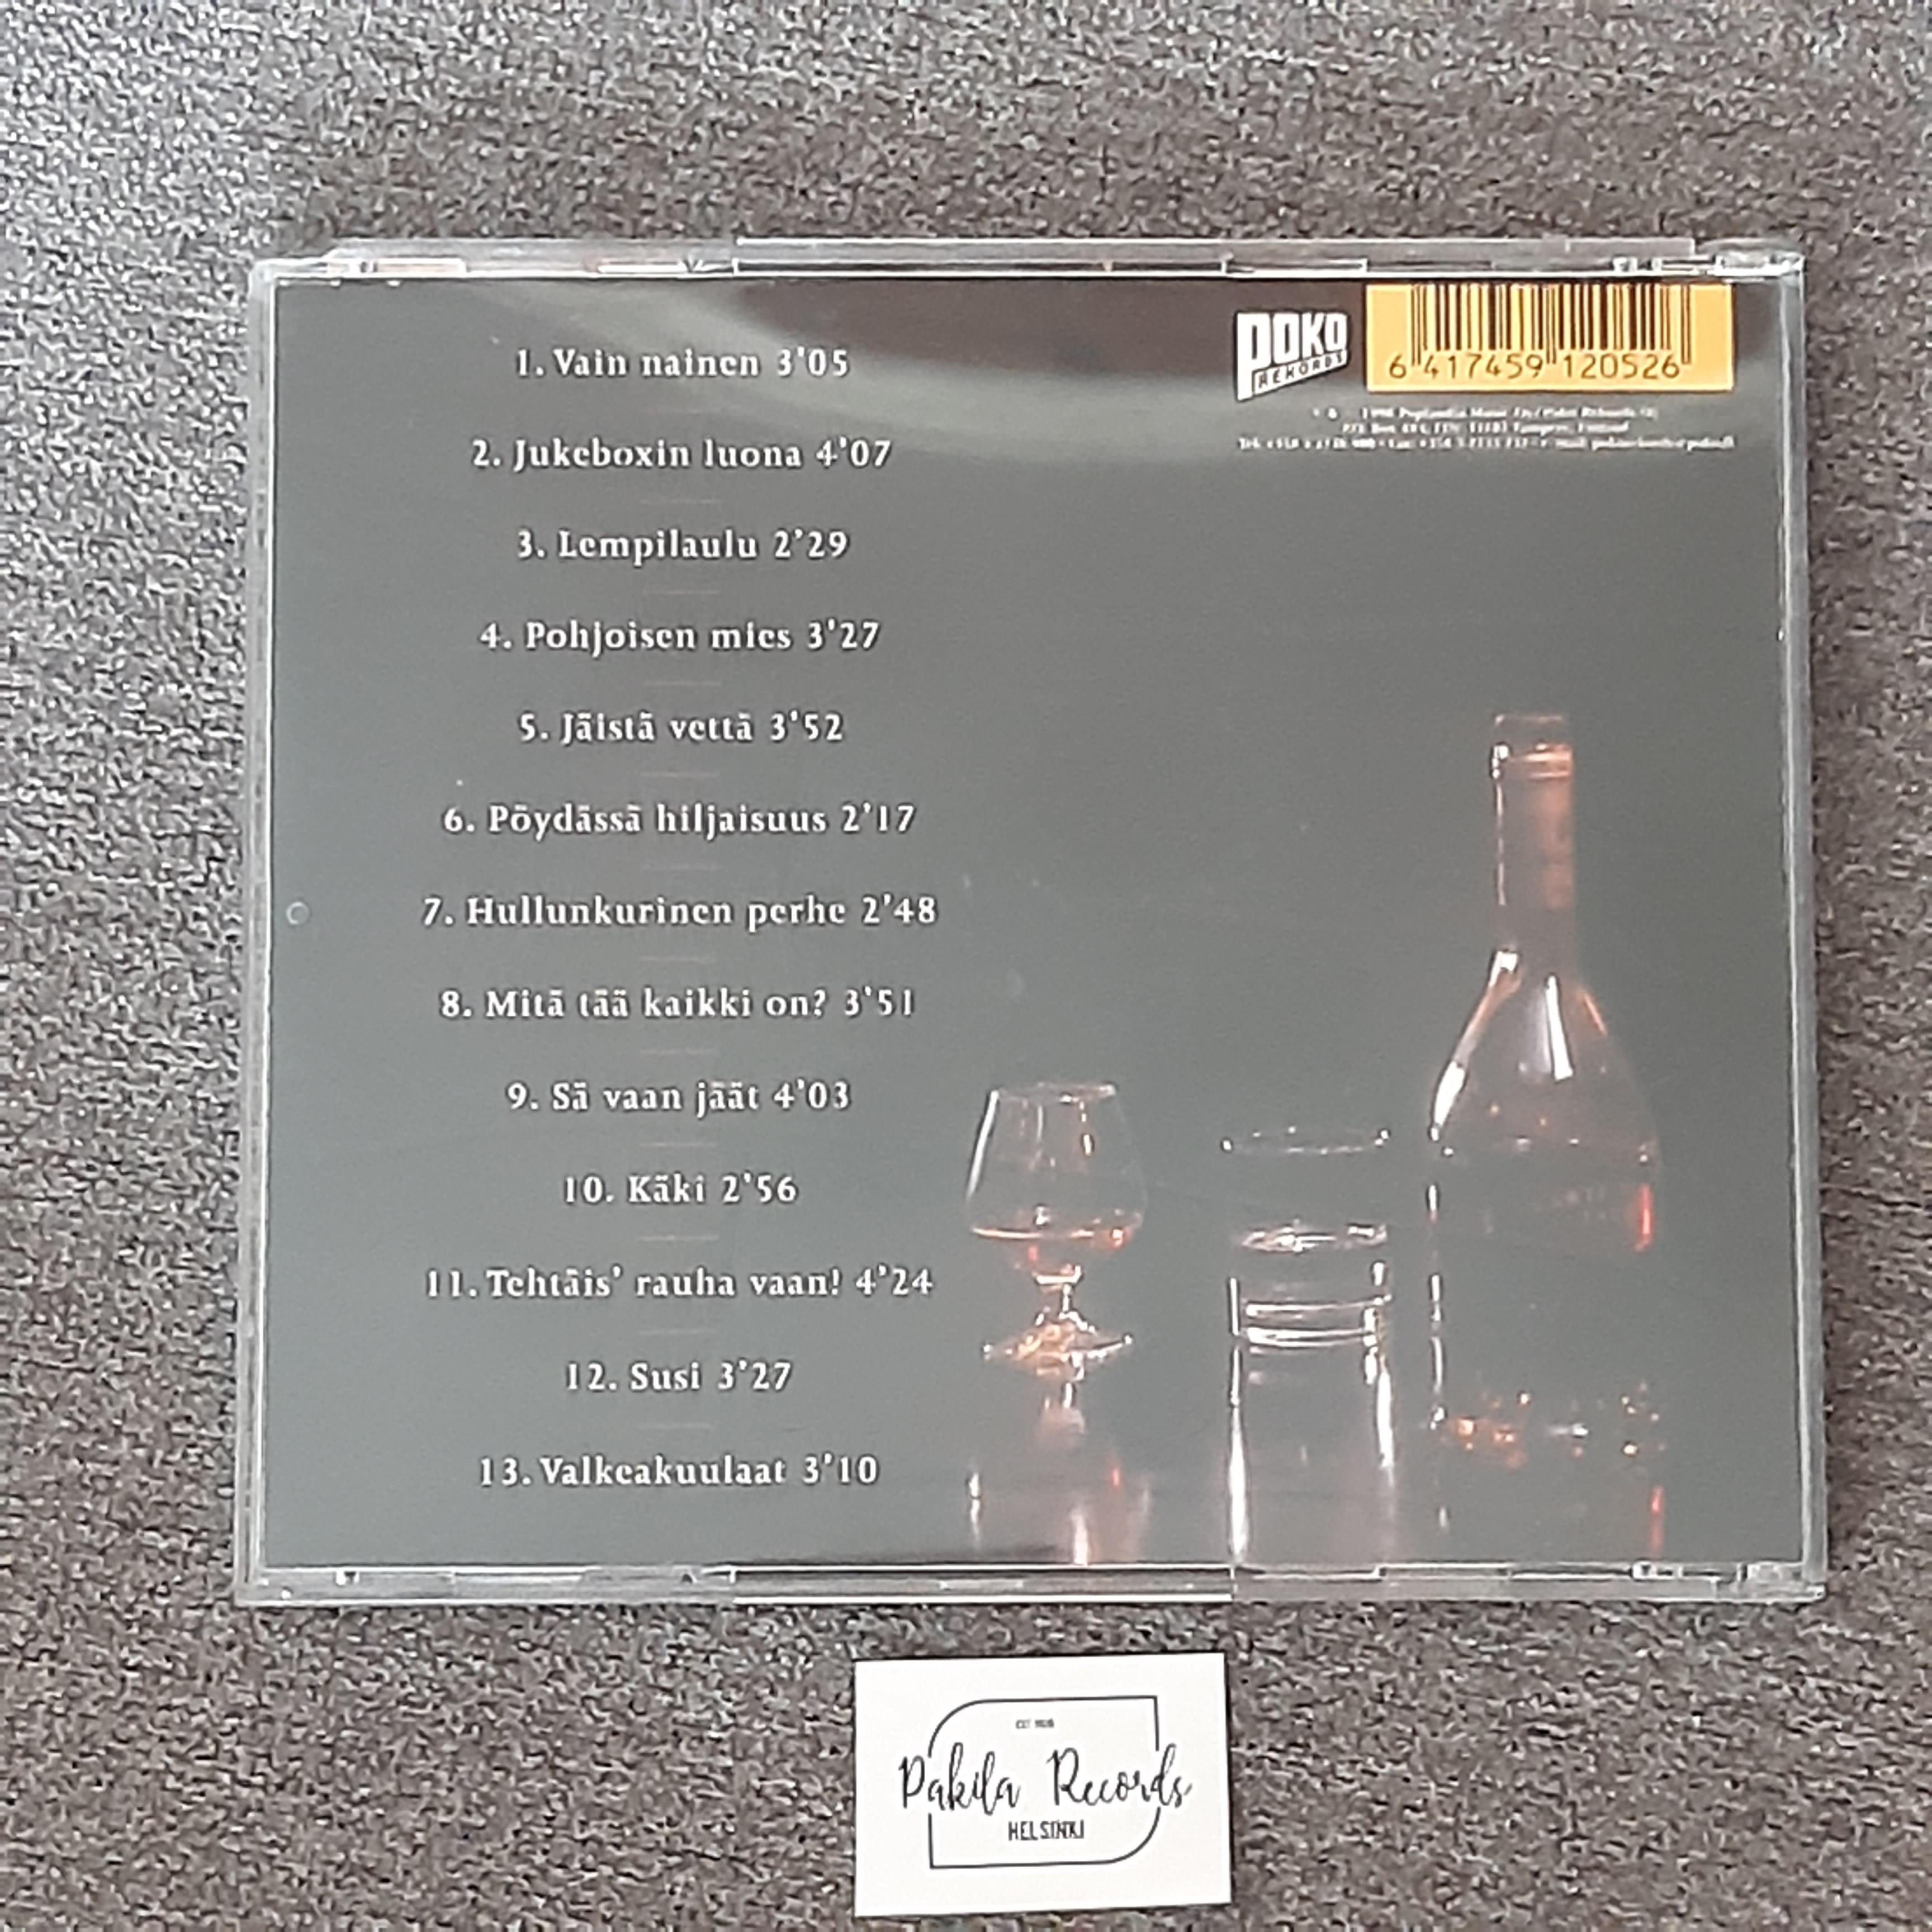 Pate Mustajärvi - Vol.4 - CD (käytetty)